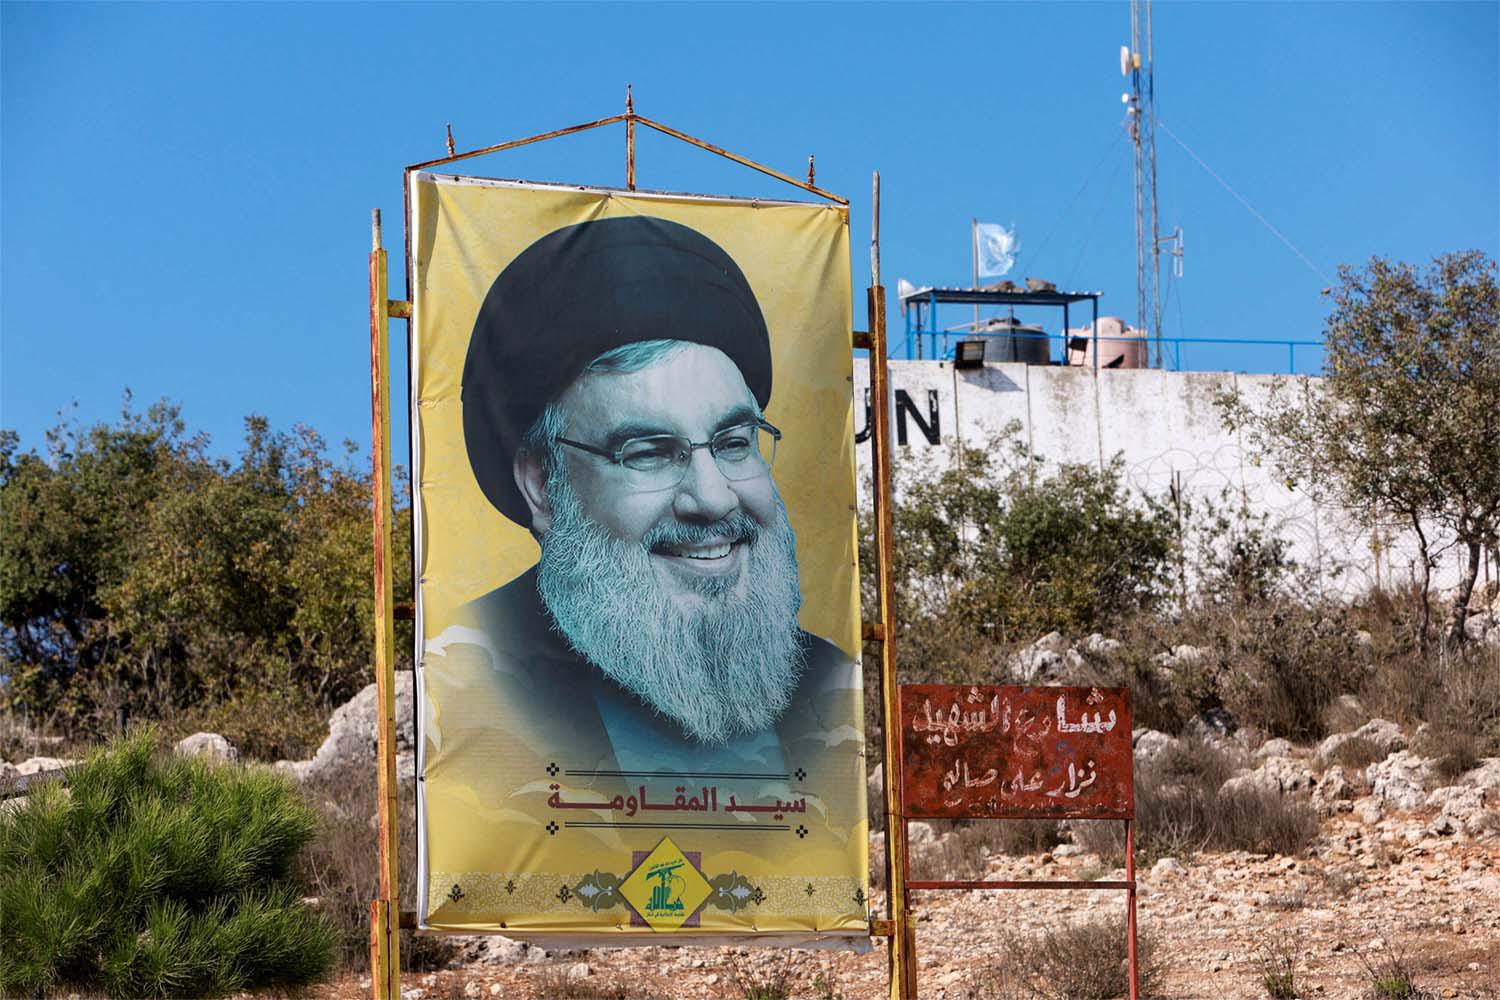 Hezbollah chief